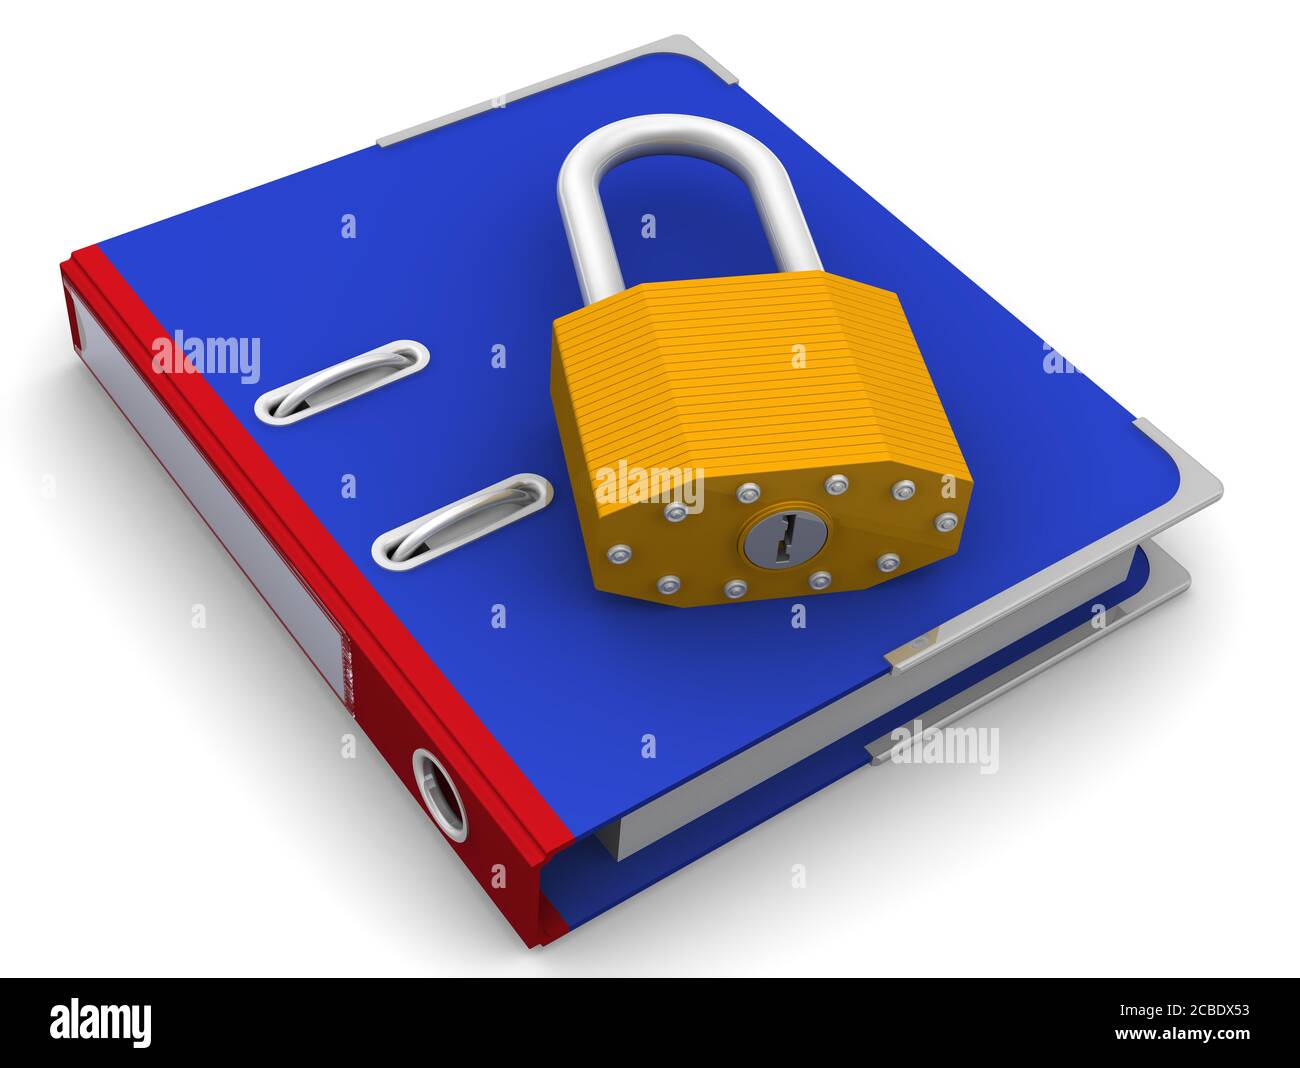 Documentation de protection. Le cadenas se trouve sur un dossier bleu. Le concept de sécurité de l'information. Illustration 3D Banque D'Images